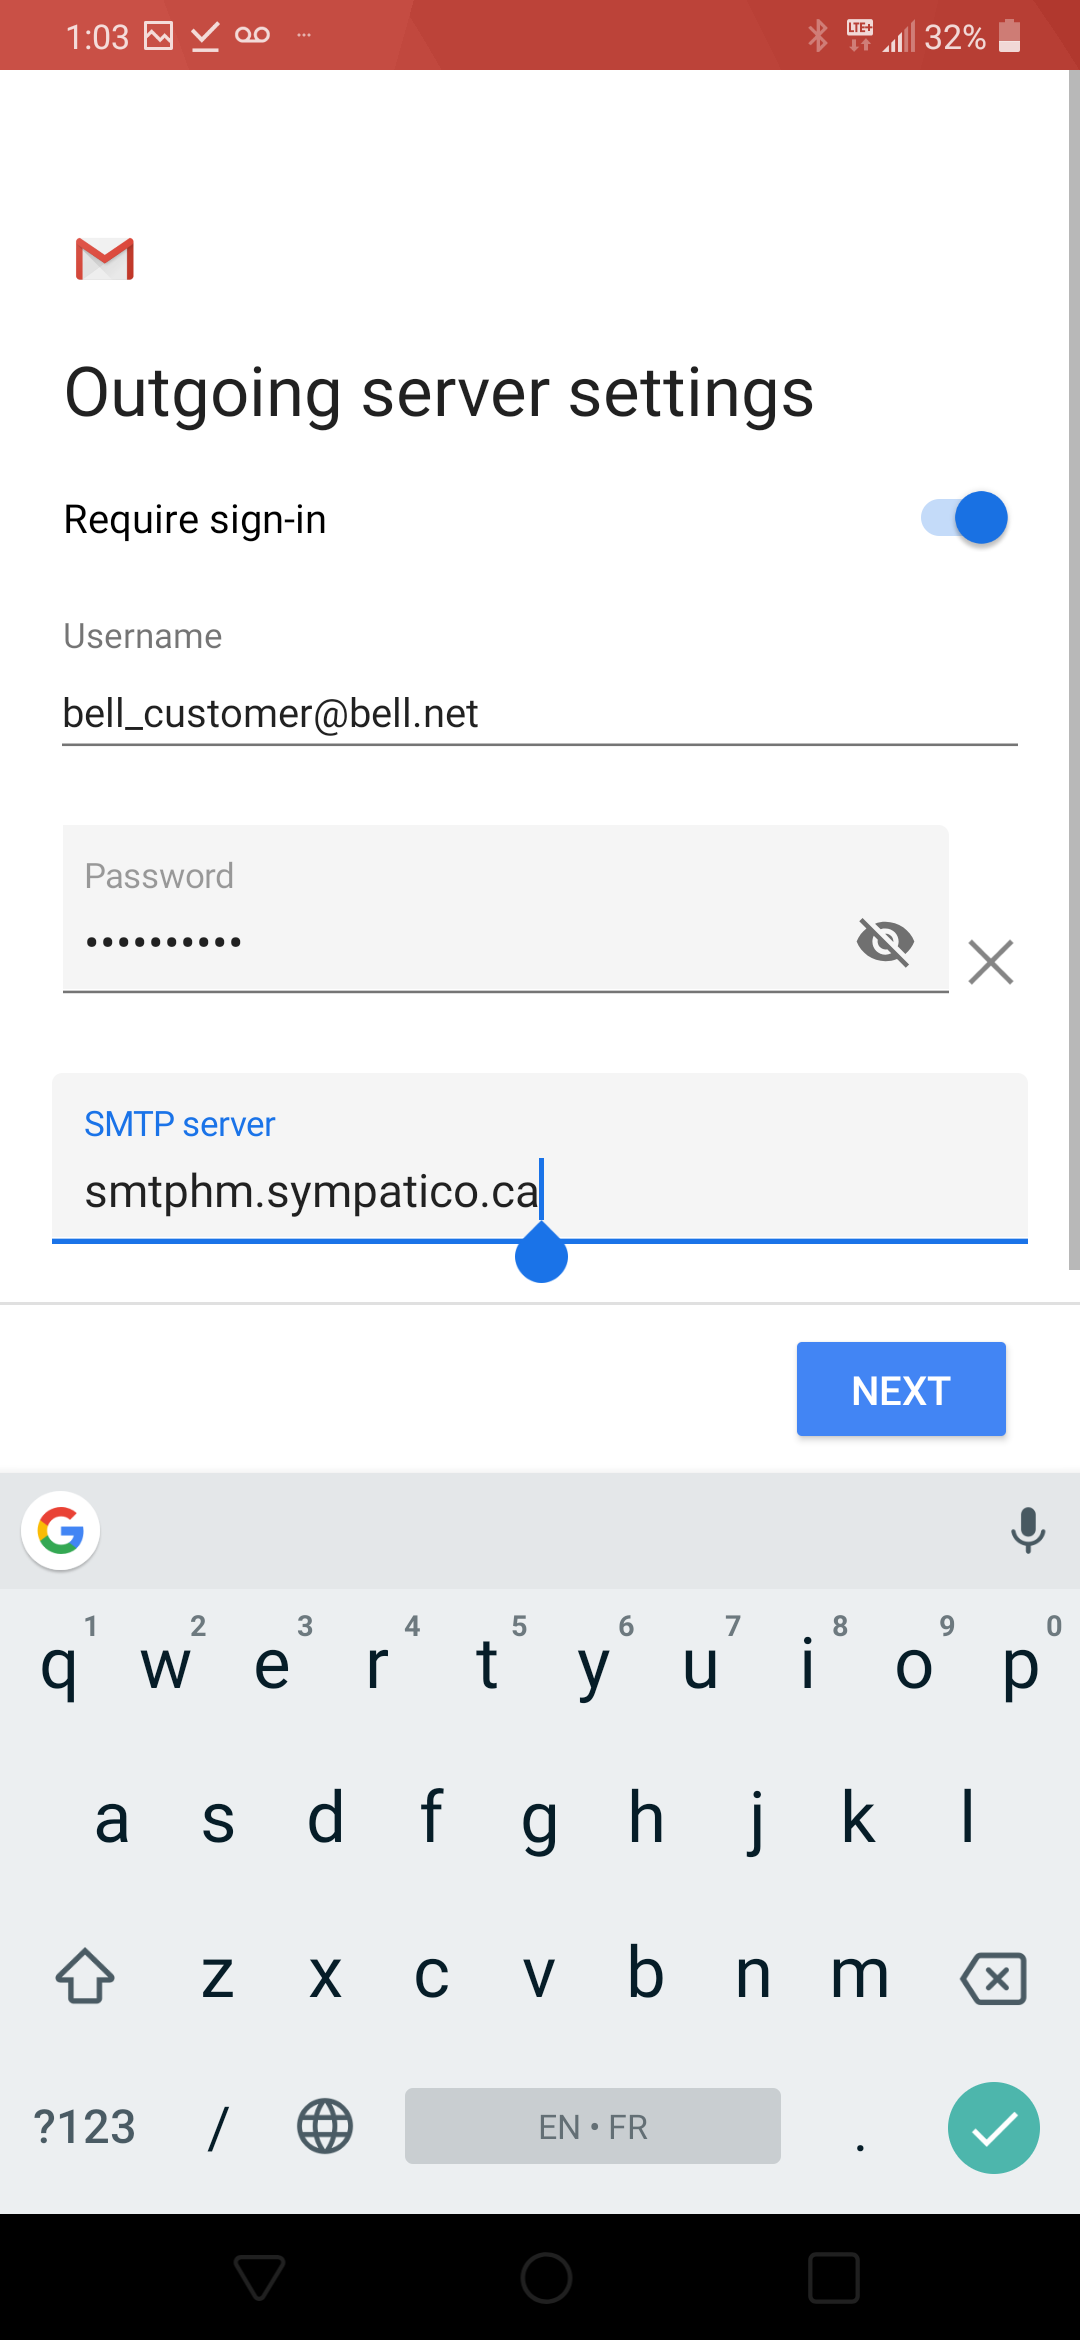 Enter smtphm.sympatico.ca as the SMTP server.